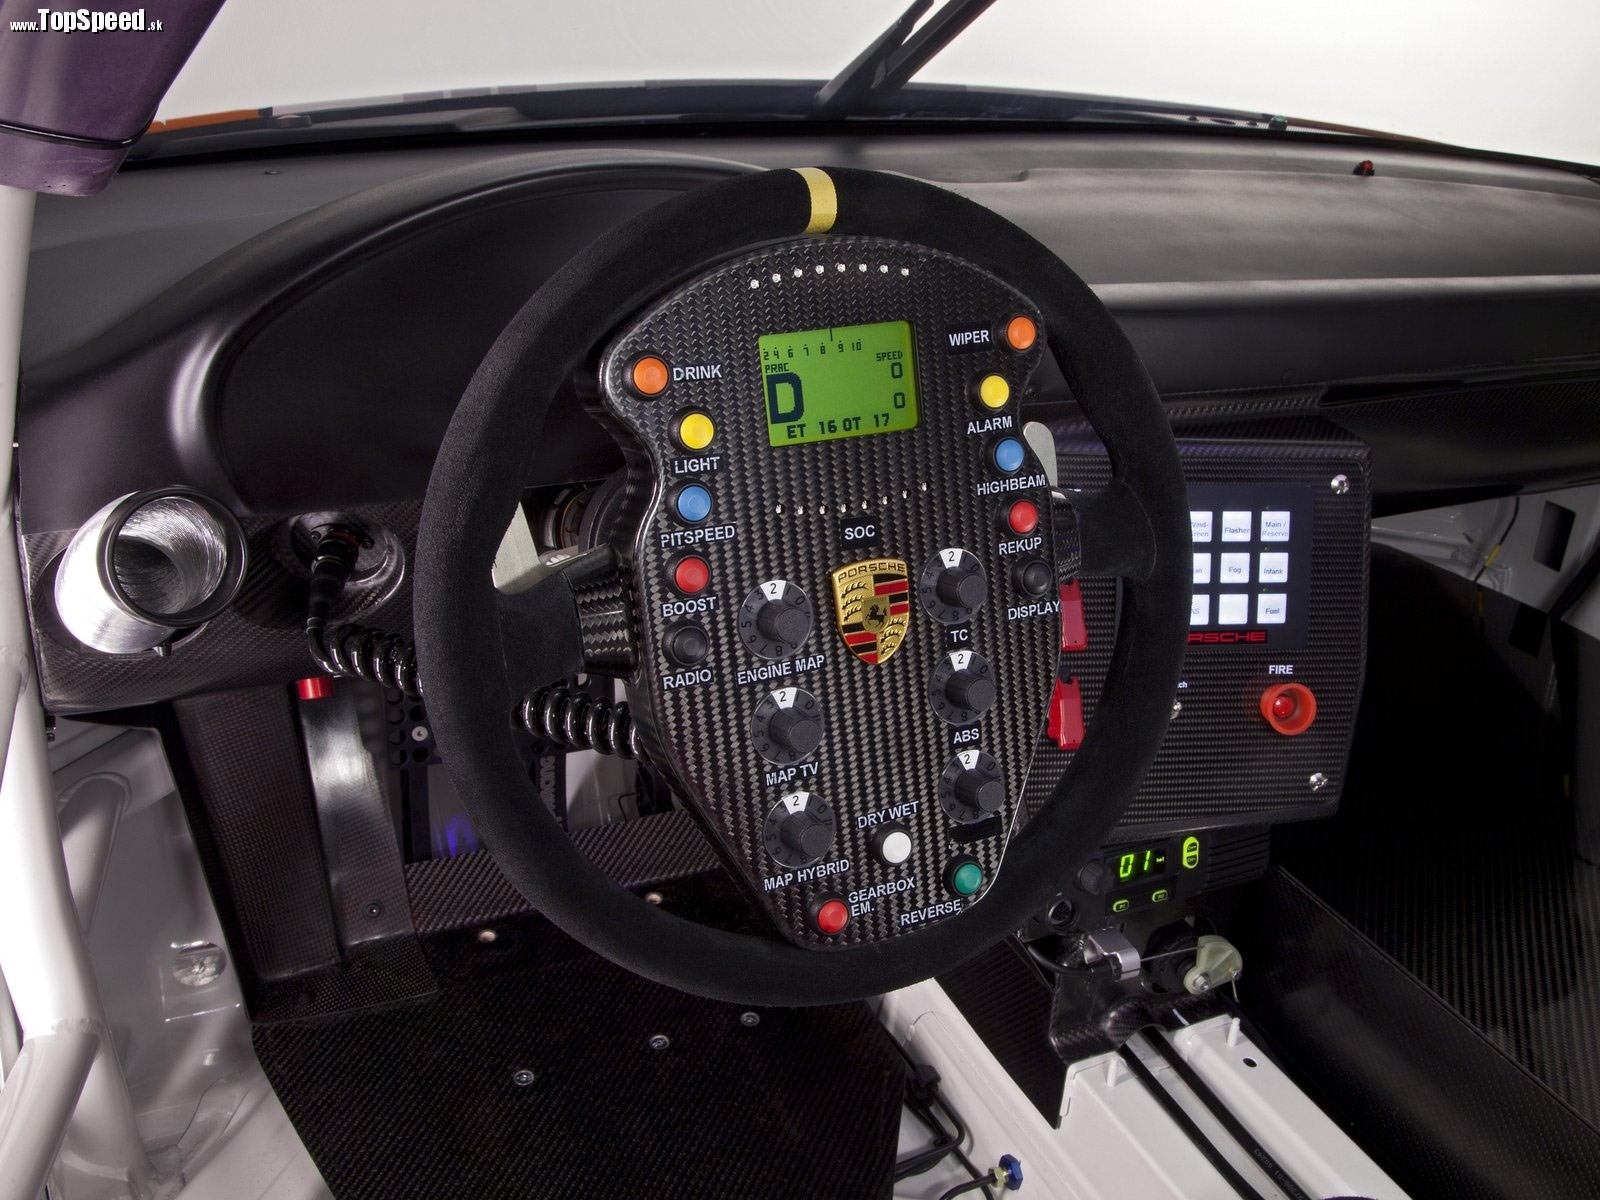 Inšpirácia F1 je evidentná aj v interiéri. Volant poskytuje vodičovi všetky potrebné informácie a ovládače. Stredová konzola je dokonca podsvietená.